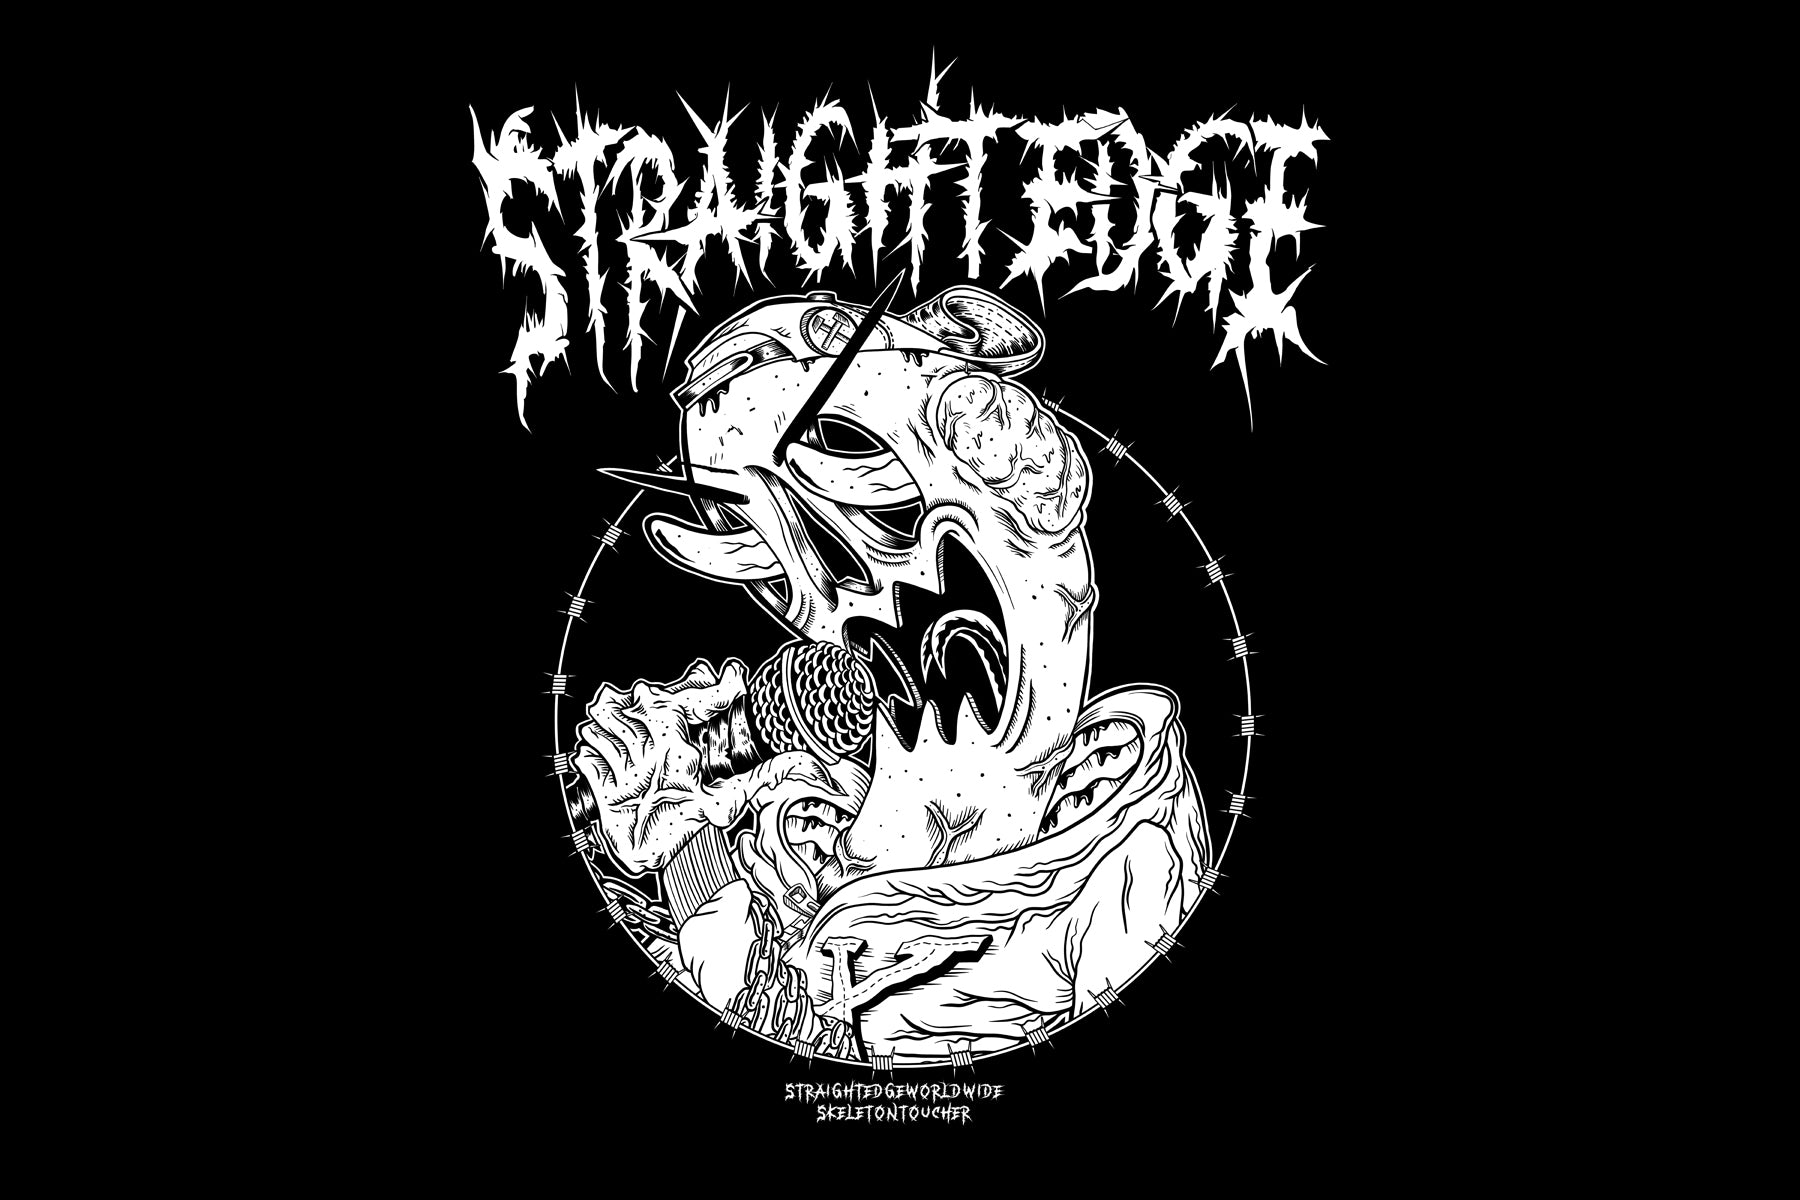 Straight Edge horror-themed black tee by SKELETONTOUCHER at STRAIGHTEDGEWORLDWIDE.com